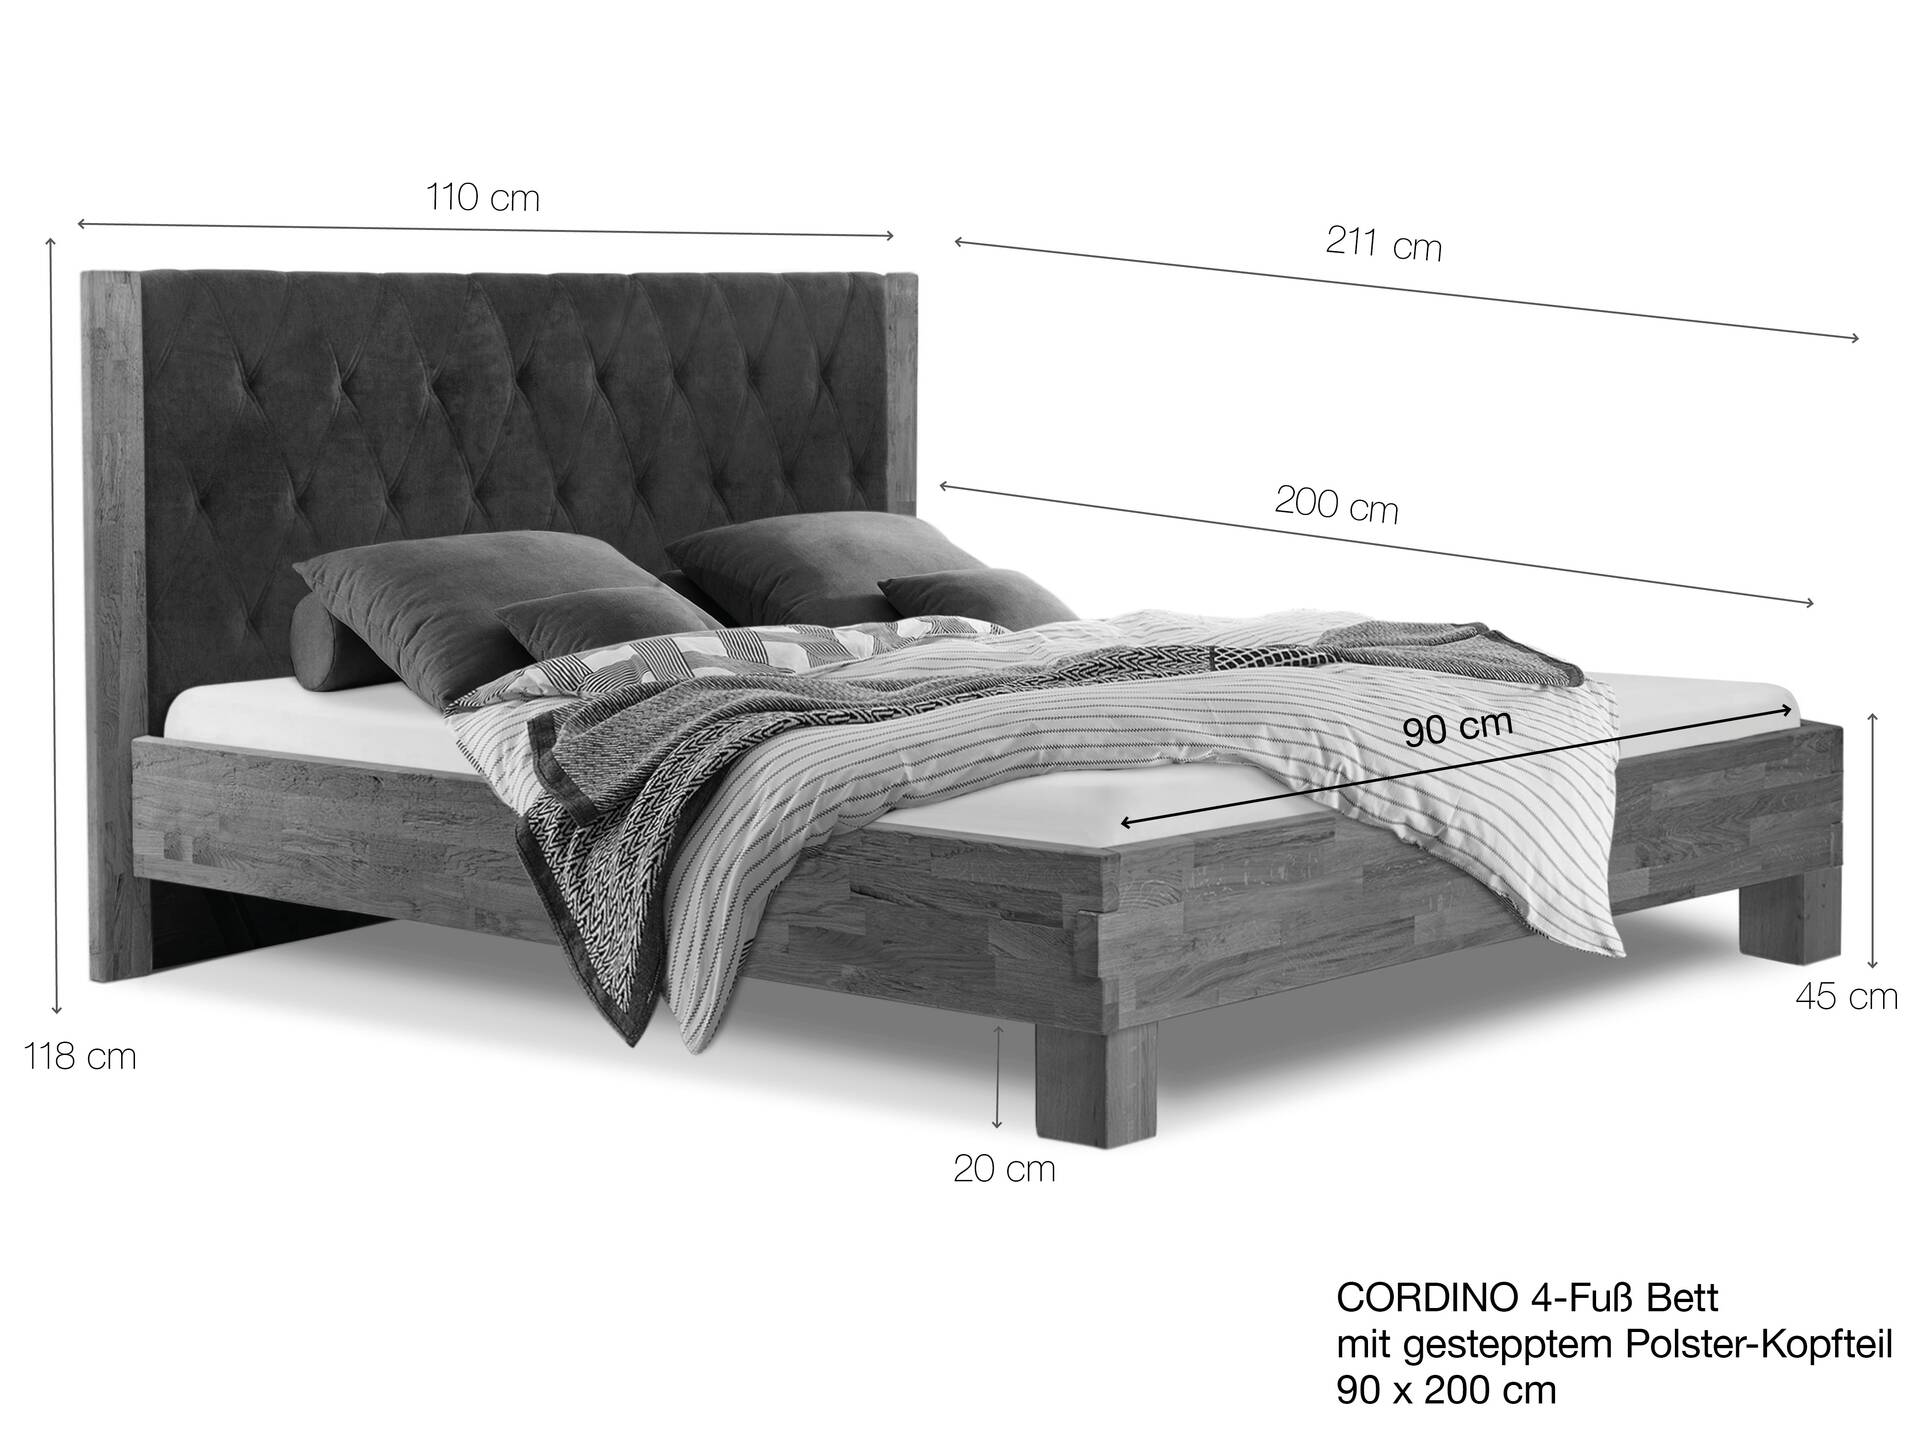 CORDINO 4-Fuß-Bett aus Eiche mit gestepptem Polster-Kopfteil, Material Massivholz 90 x 200 cm | Eiche unbehandelt | Kunstleder Braun | gebürstet